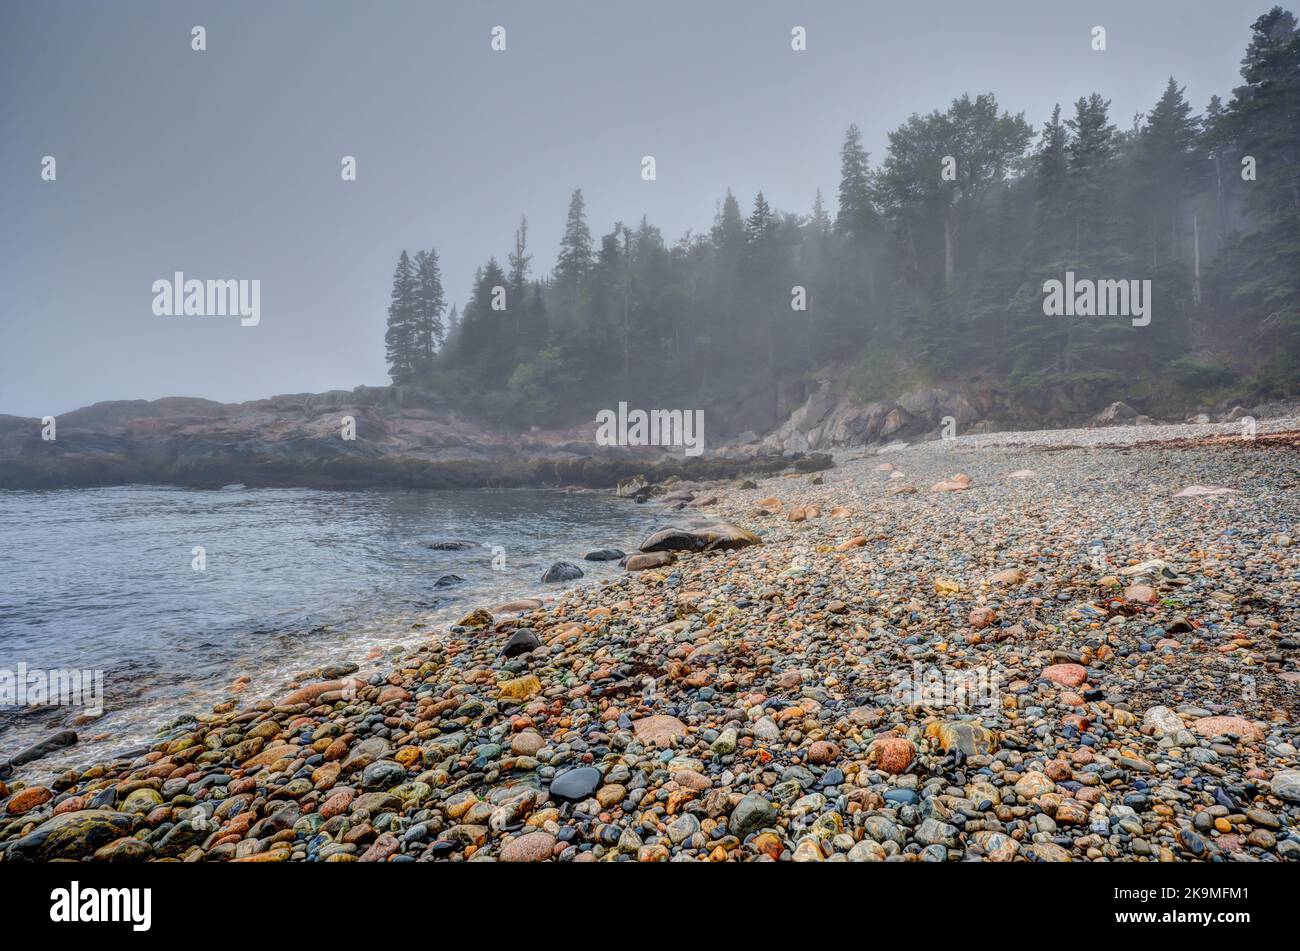 Rochers ronds multicolores sur la plage Little Hunters dans le parc national Acadia, Maine. Marée entrant alors que les vagues s'effondrent. Banque D'Images